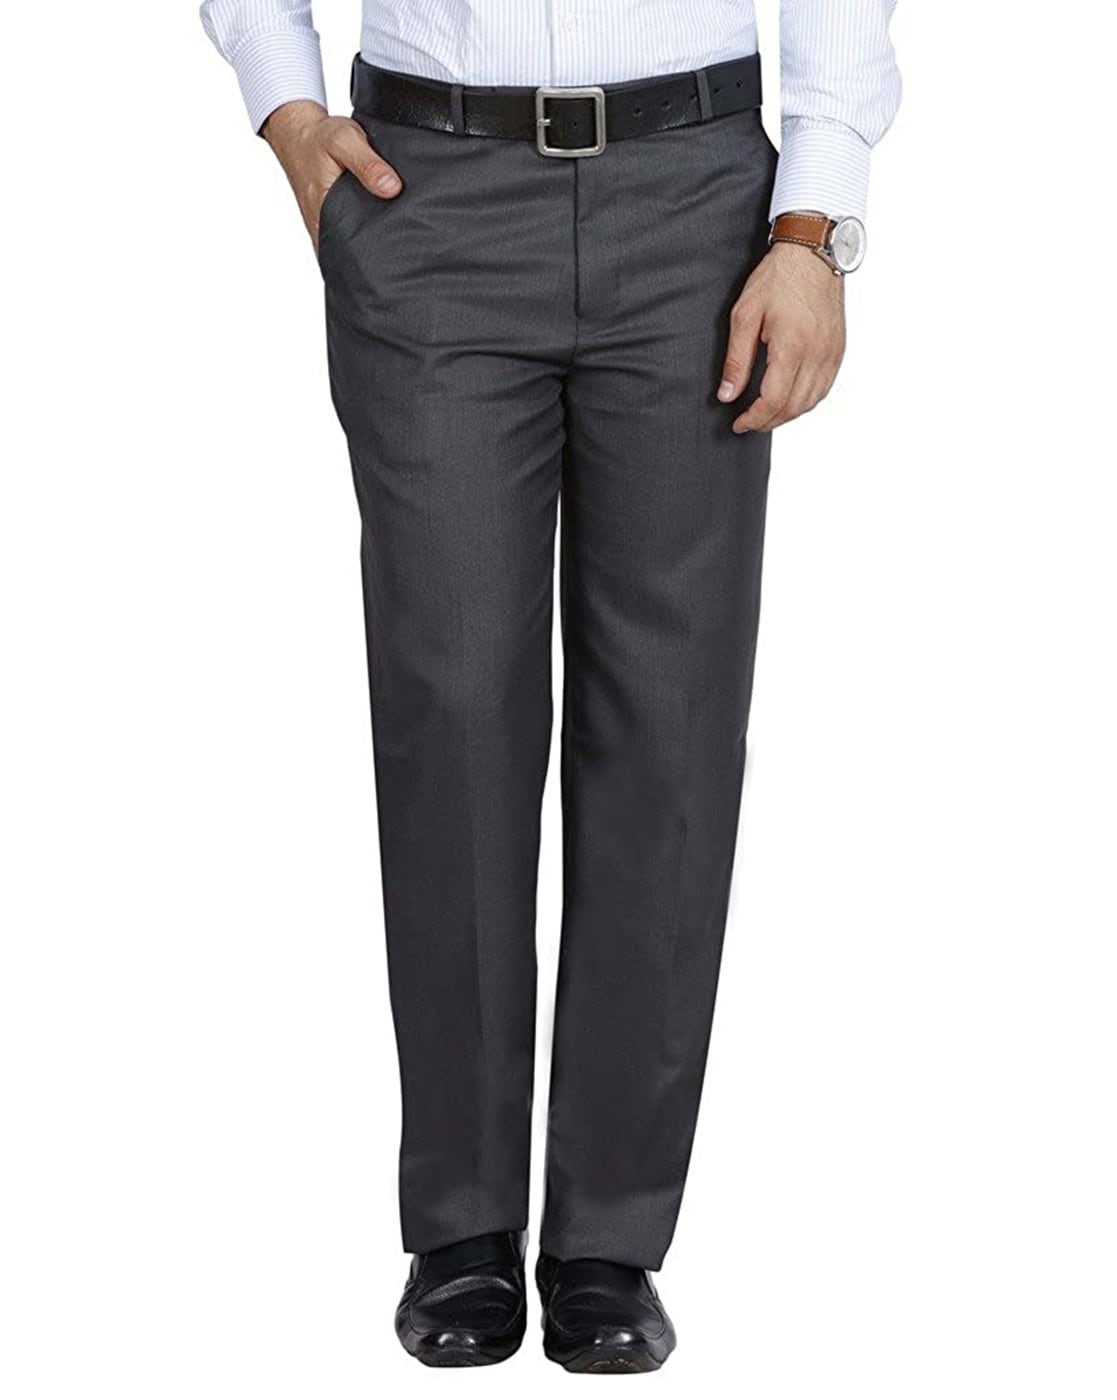 Pesado Dark Grey Formal Trouser For mens-vachngandaiphat.com.vn